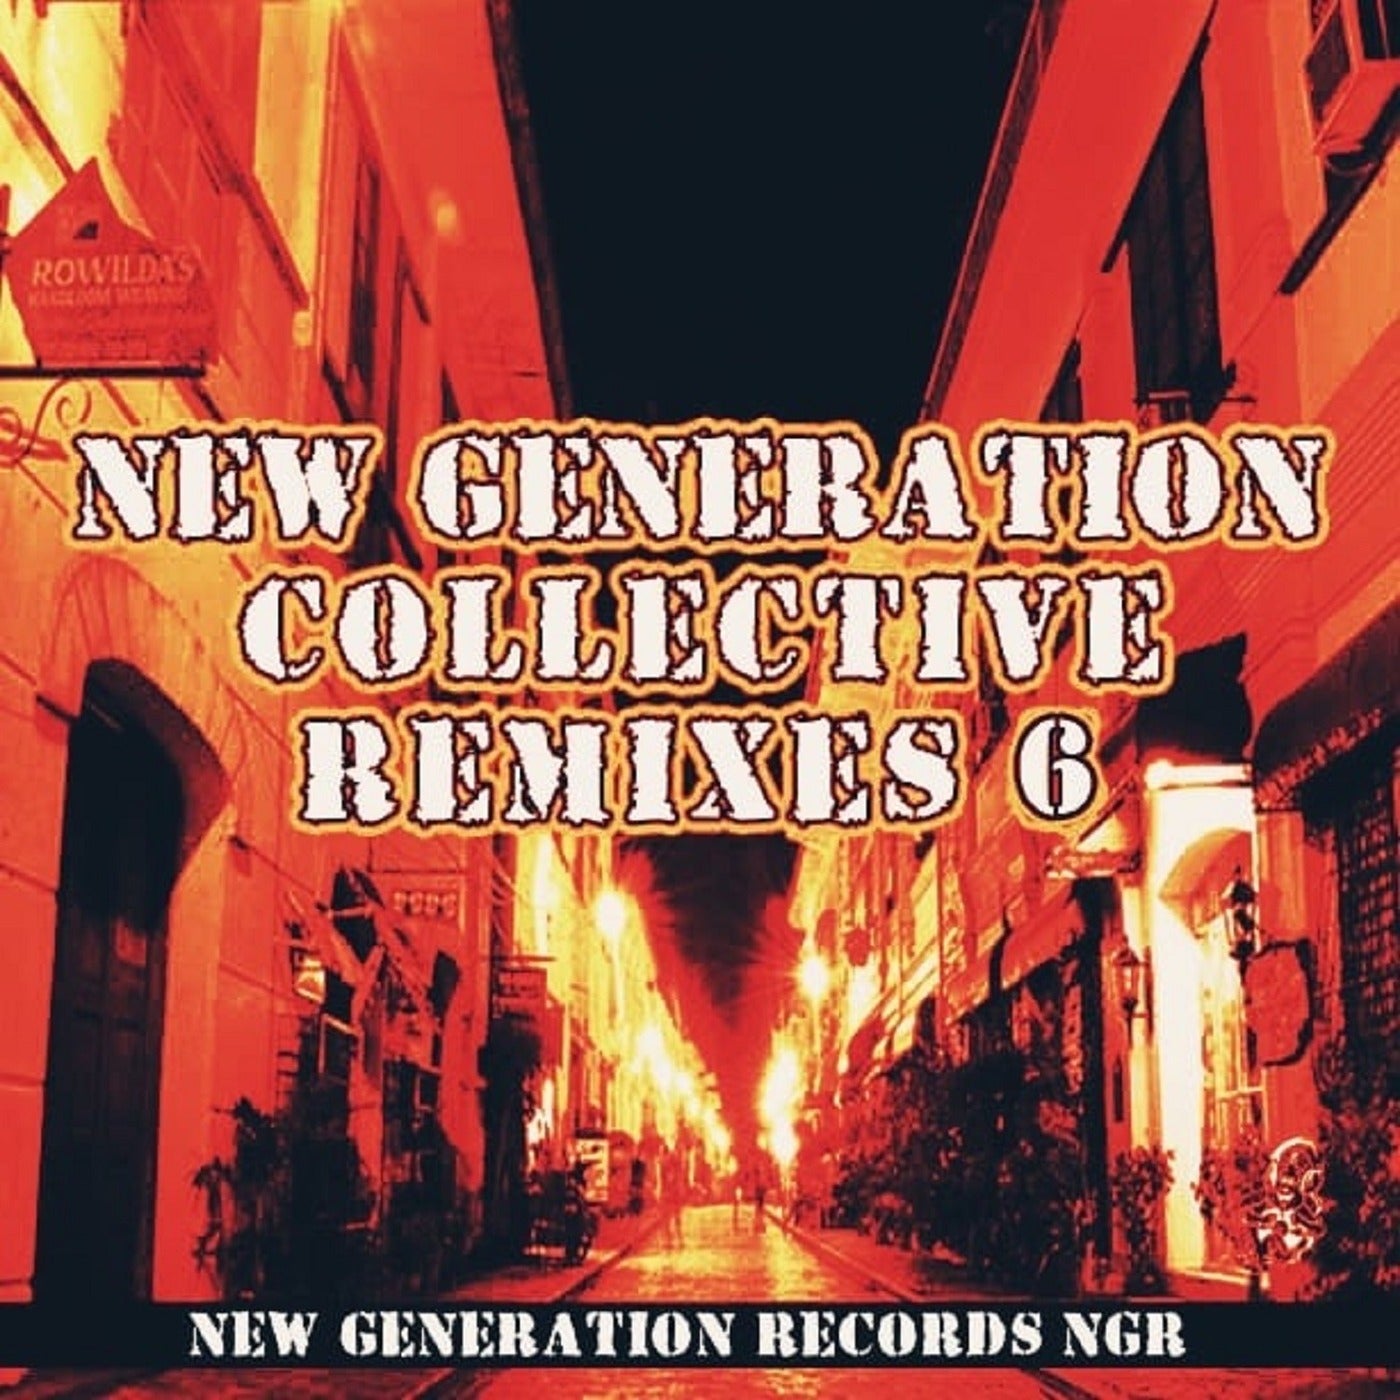 New Generation Collective Remixes, Vol. 6